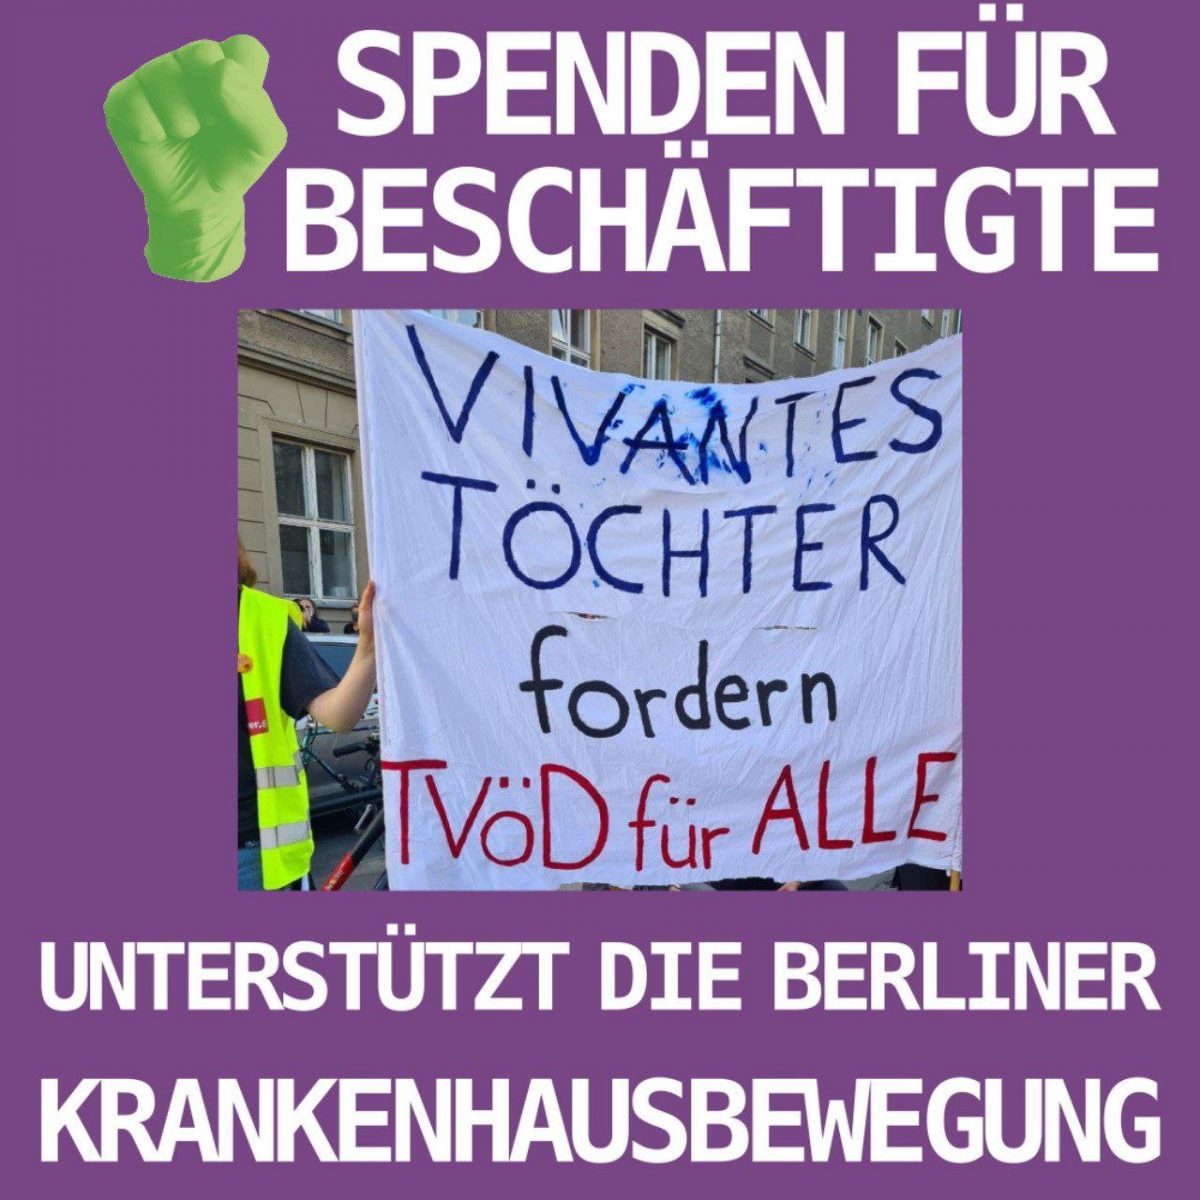 Letzte Runde der Spendenkampagne für die Beschäftigten der Berliner Krankenhausbewegung